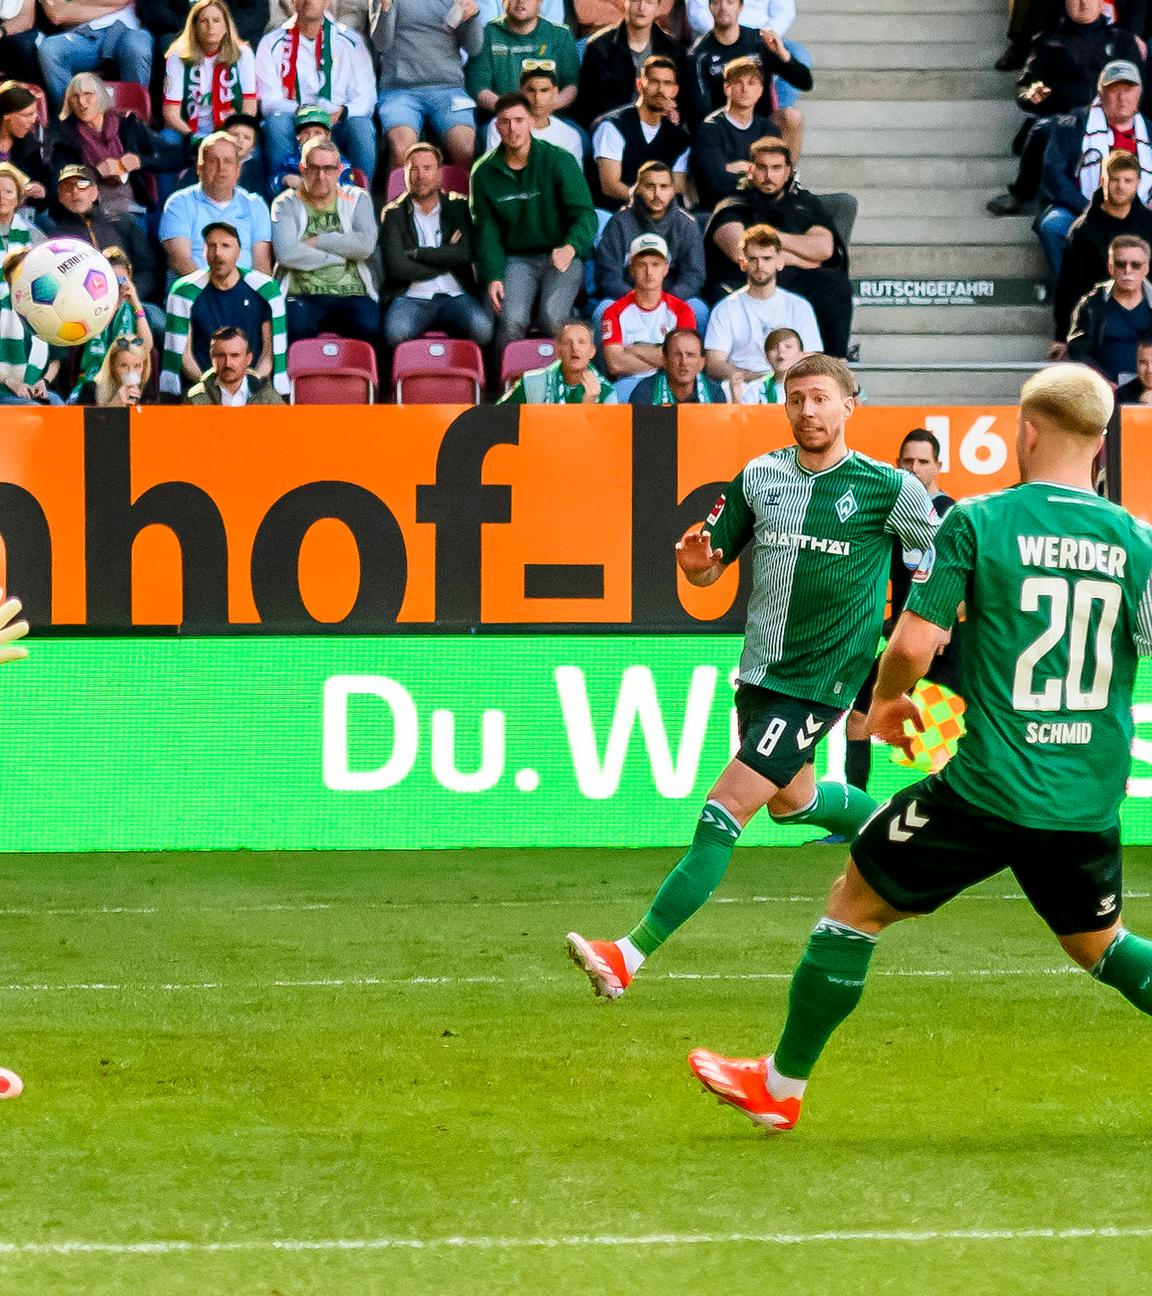 Torschuss zum 0:1 durch Romano Schmid (Werder Bremen, 20).